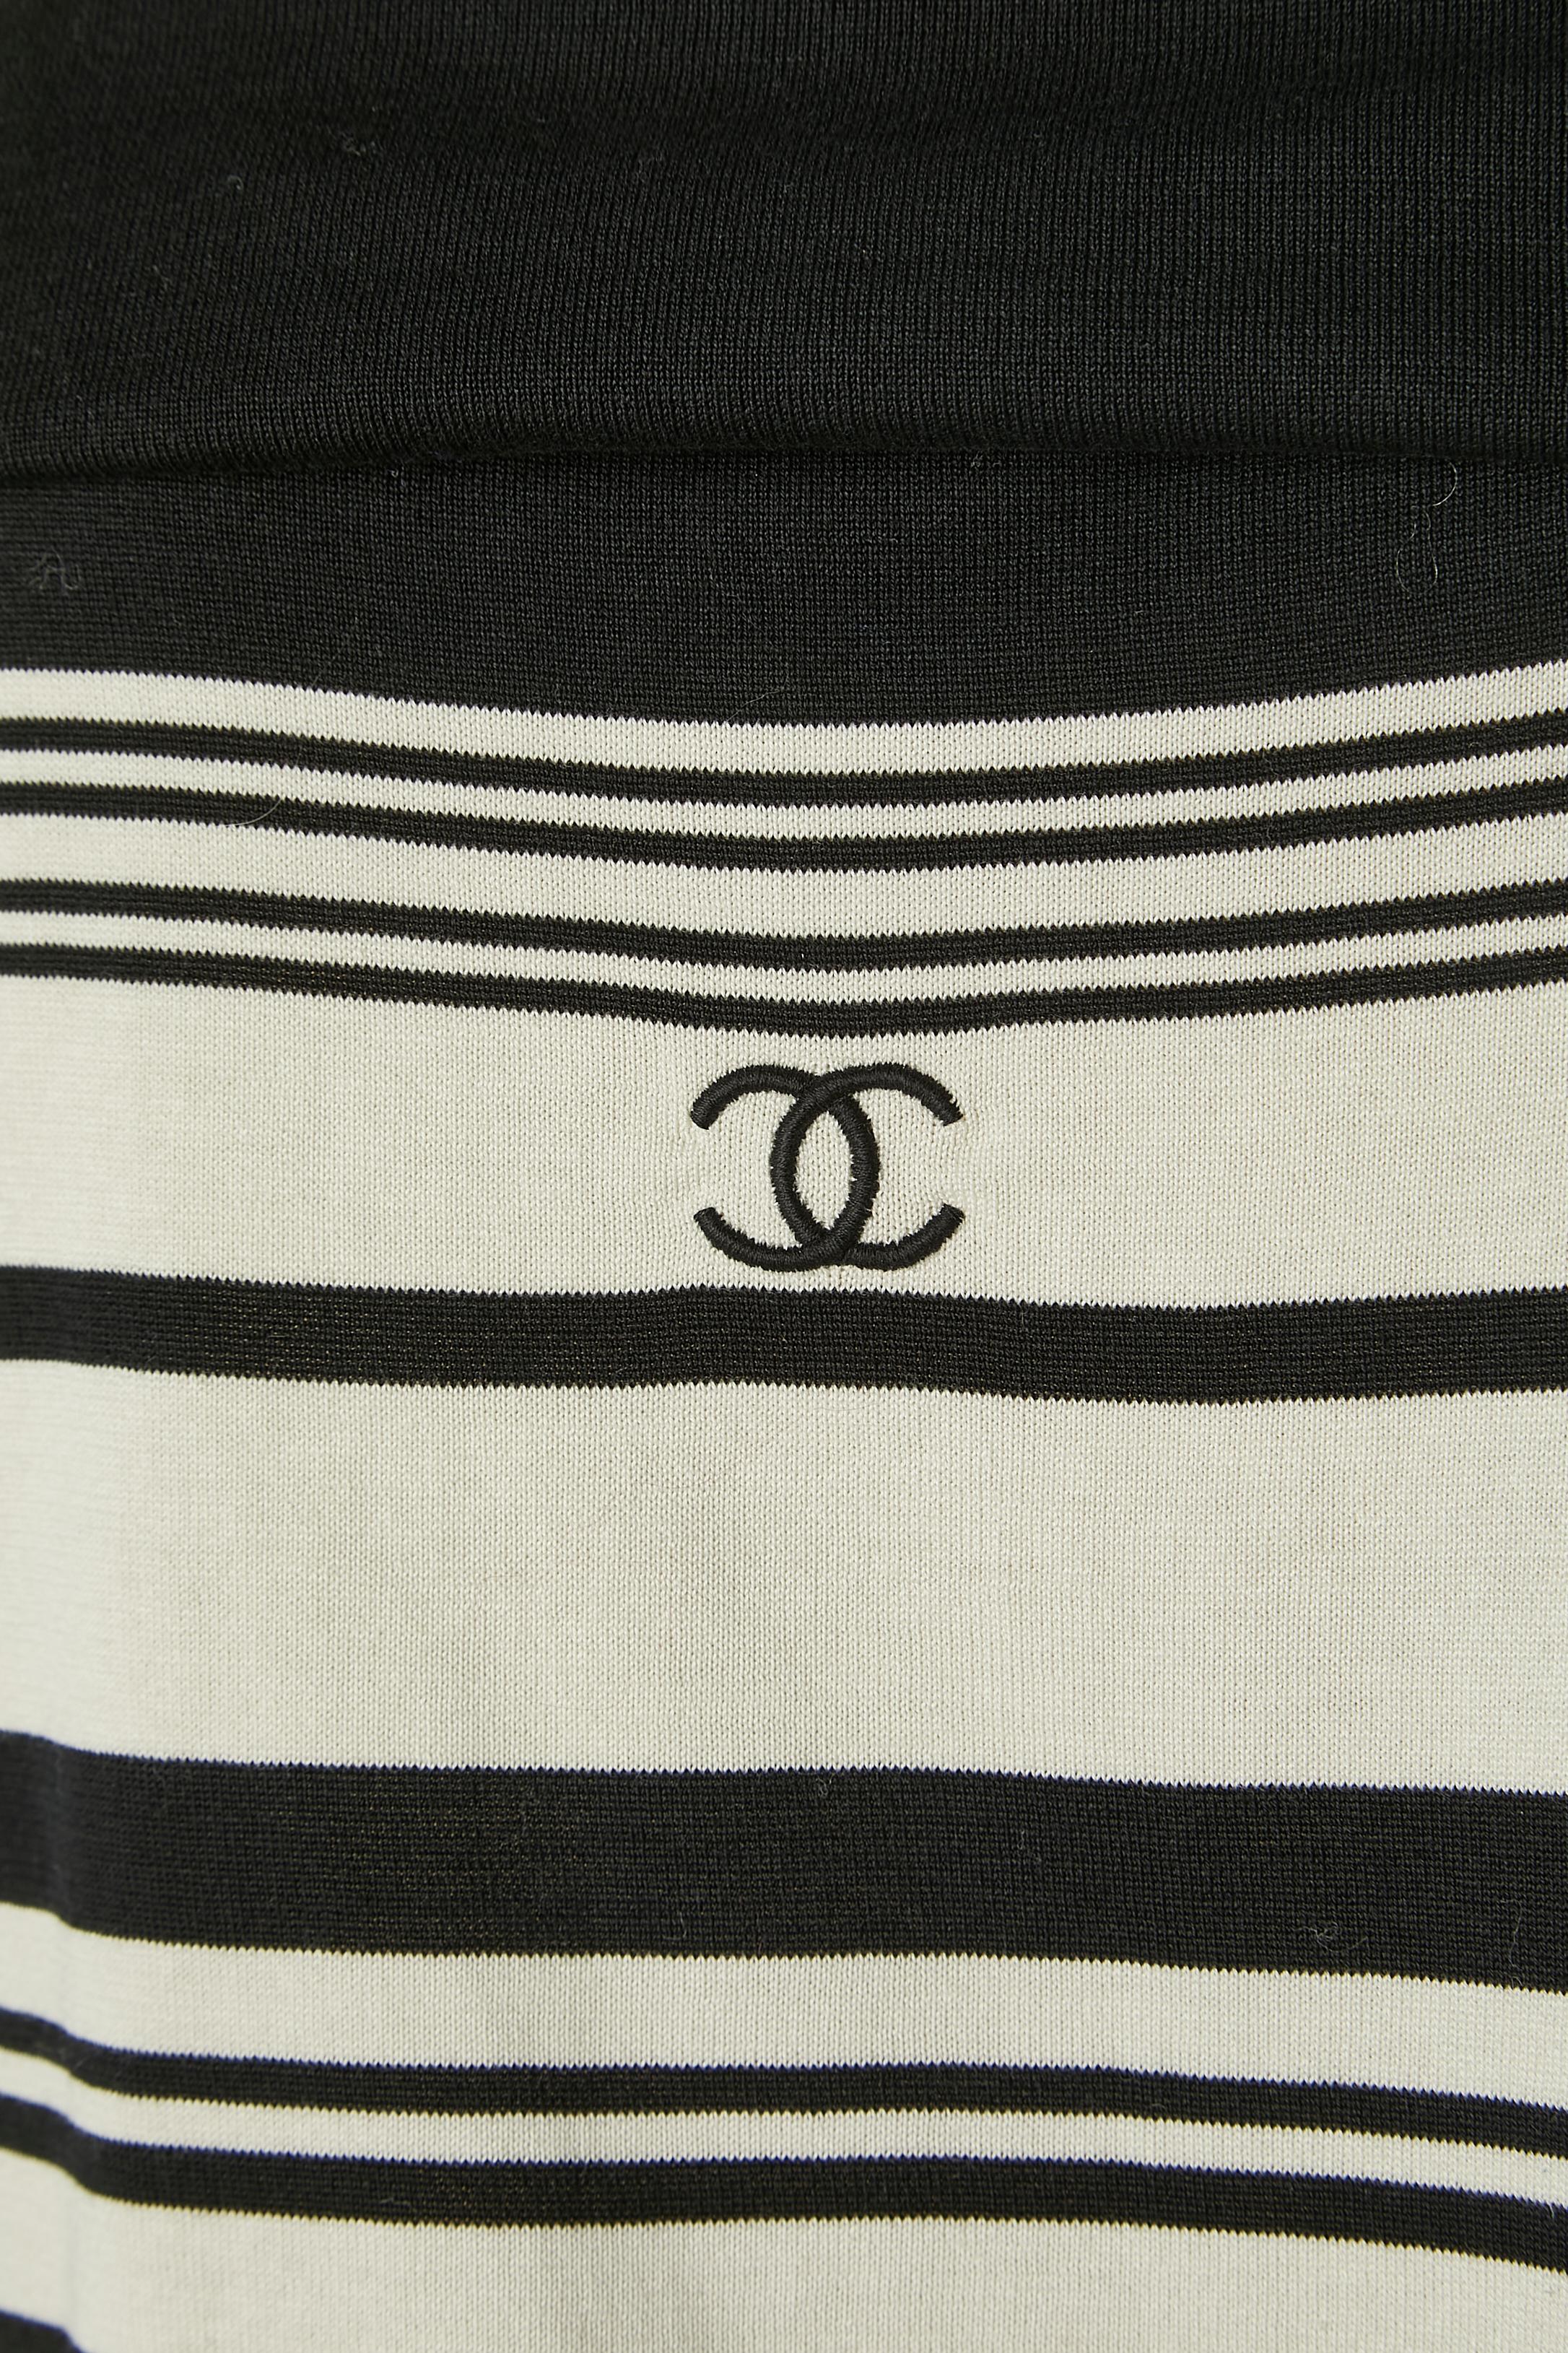 Jersey tricoté en coton avec des rayures noires et blanches. 
TAILLE 44 (Fr) 14 (Us) 